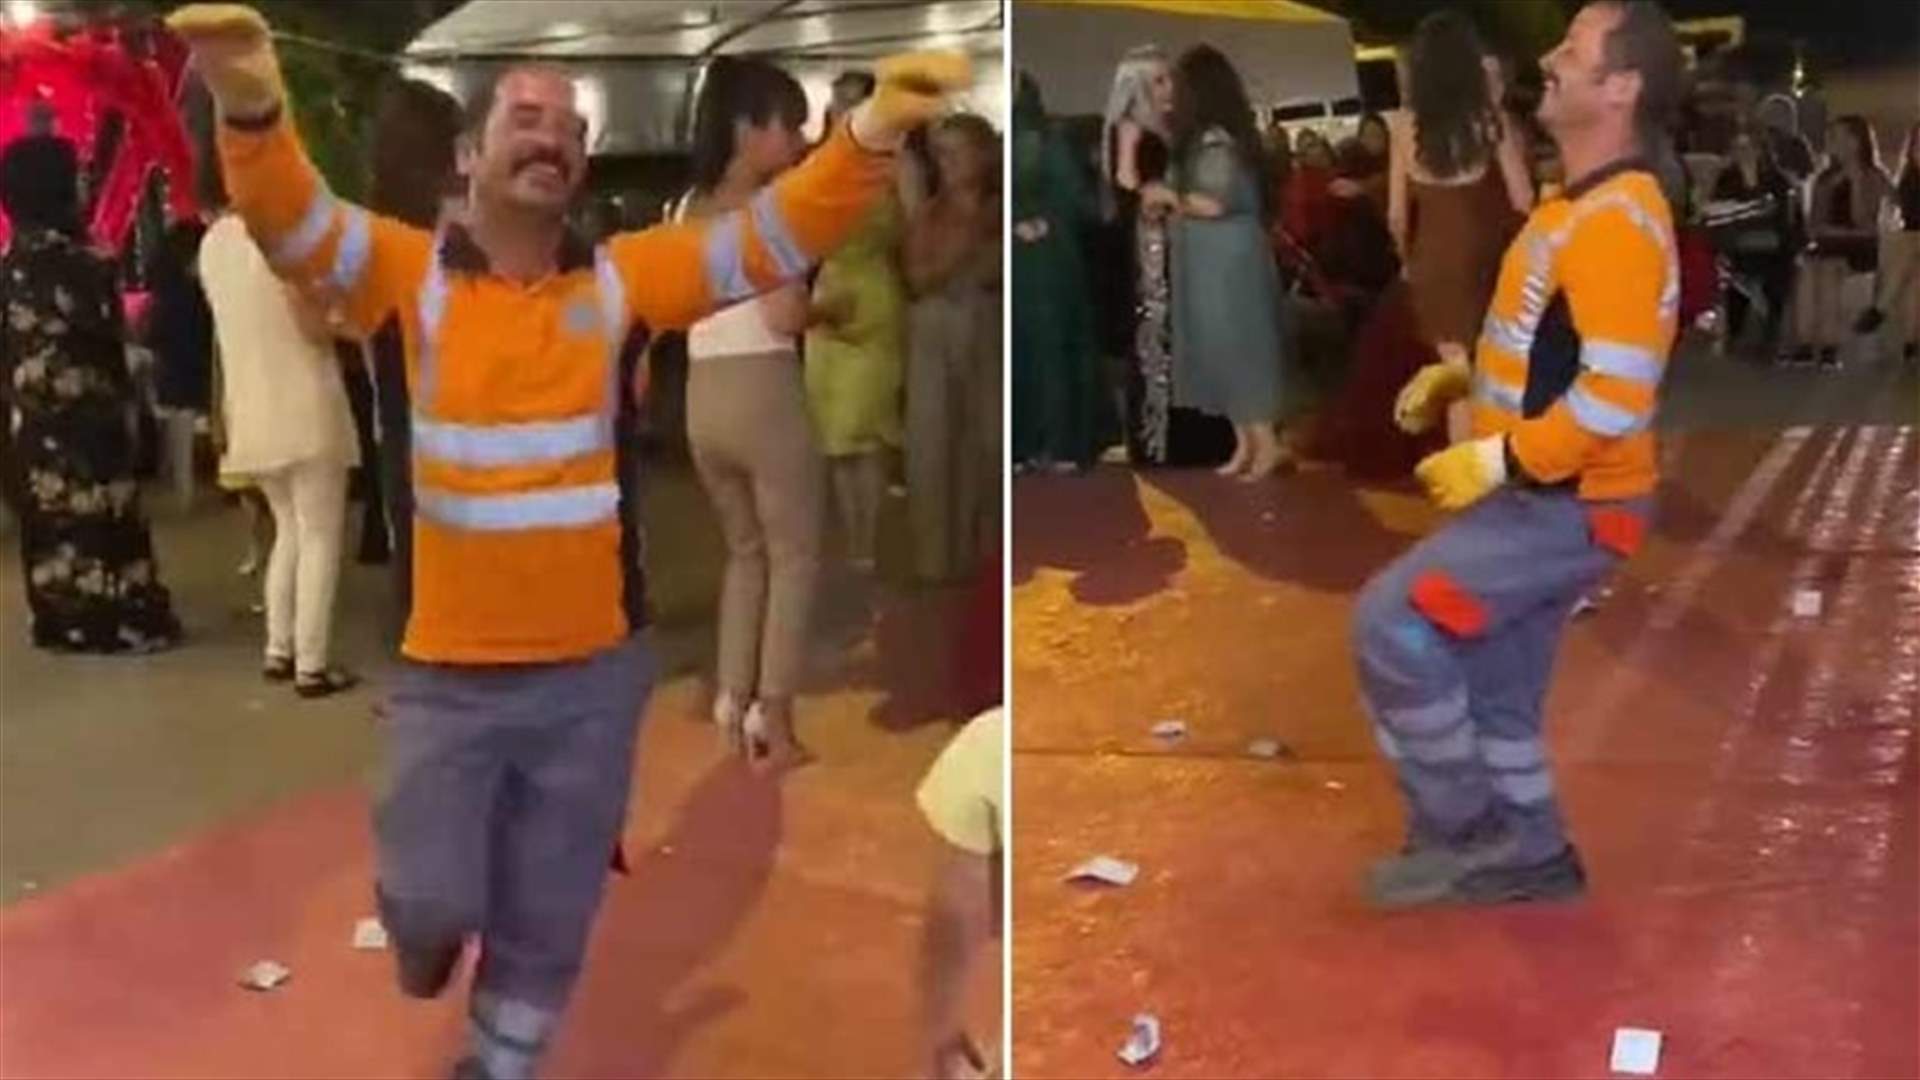 عامل نظافة يقتحم حفل زفاف ويرقص... فيديو يوثق المشهد في الشارع